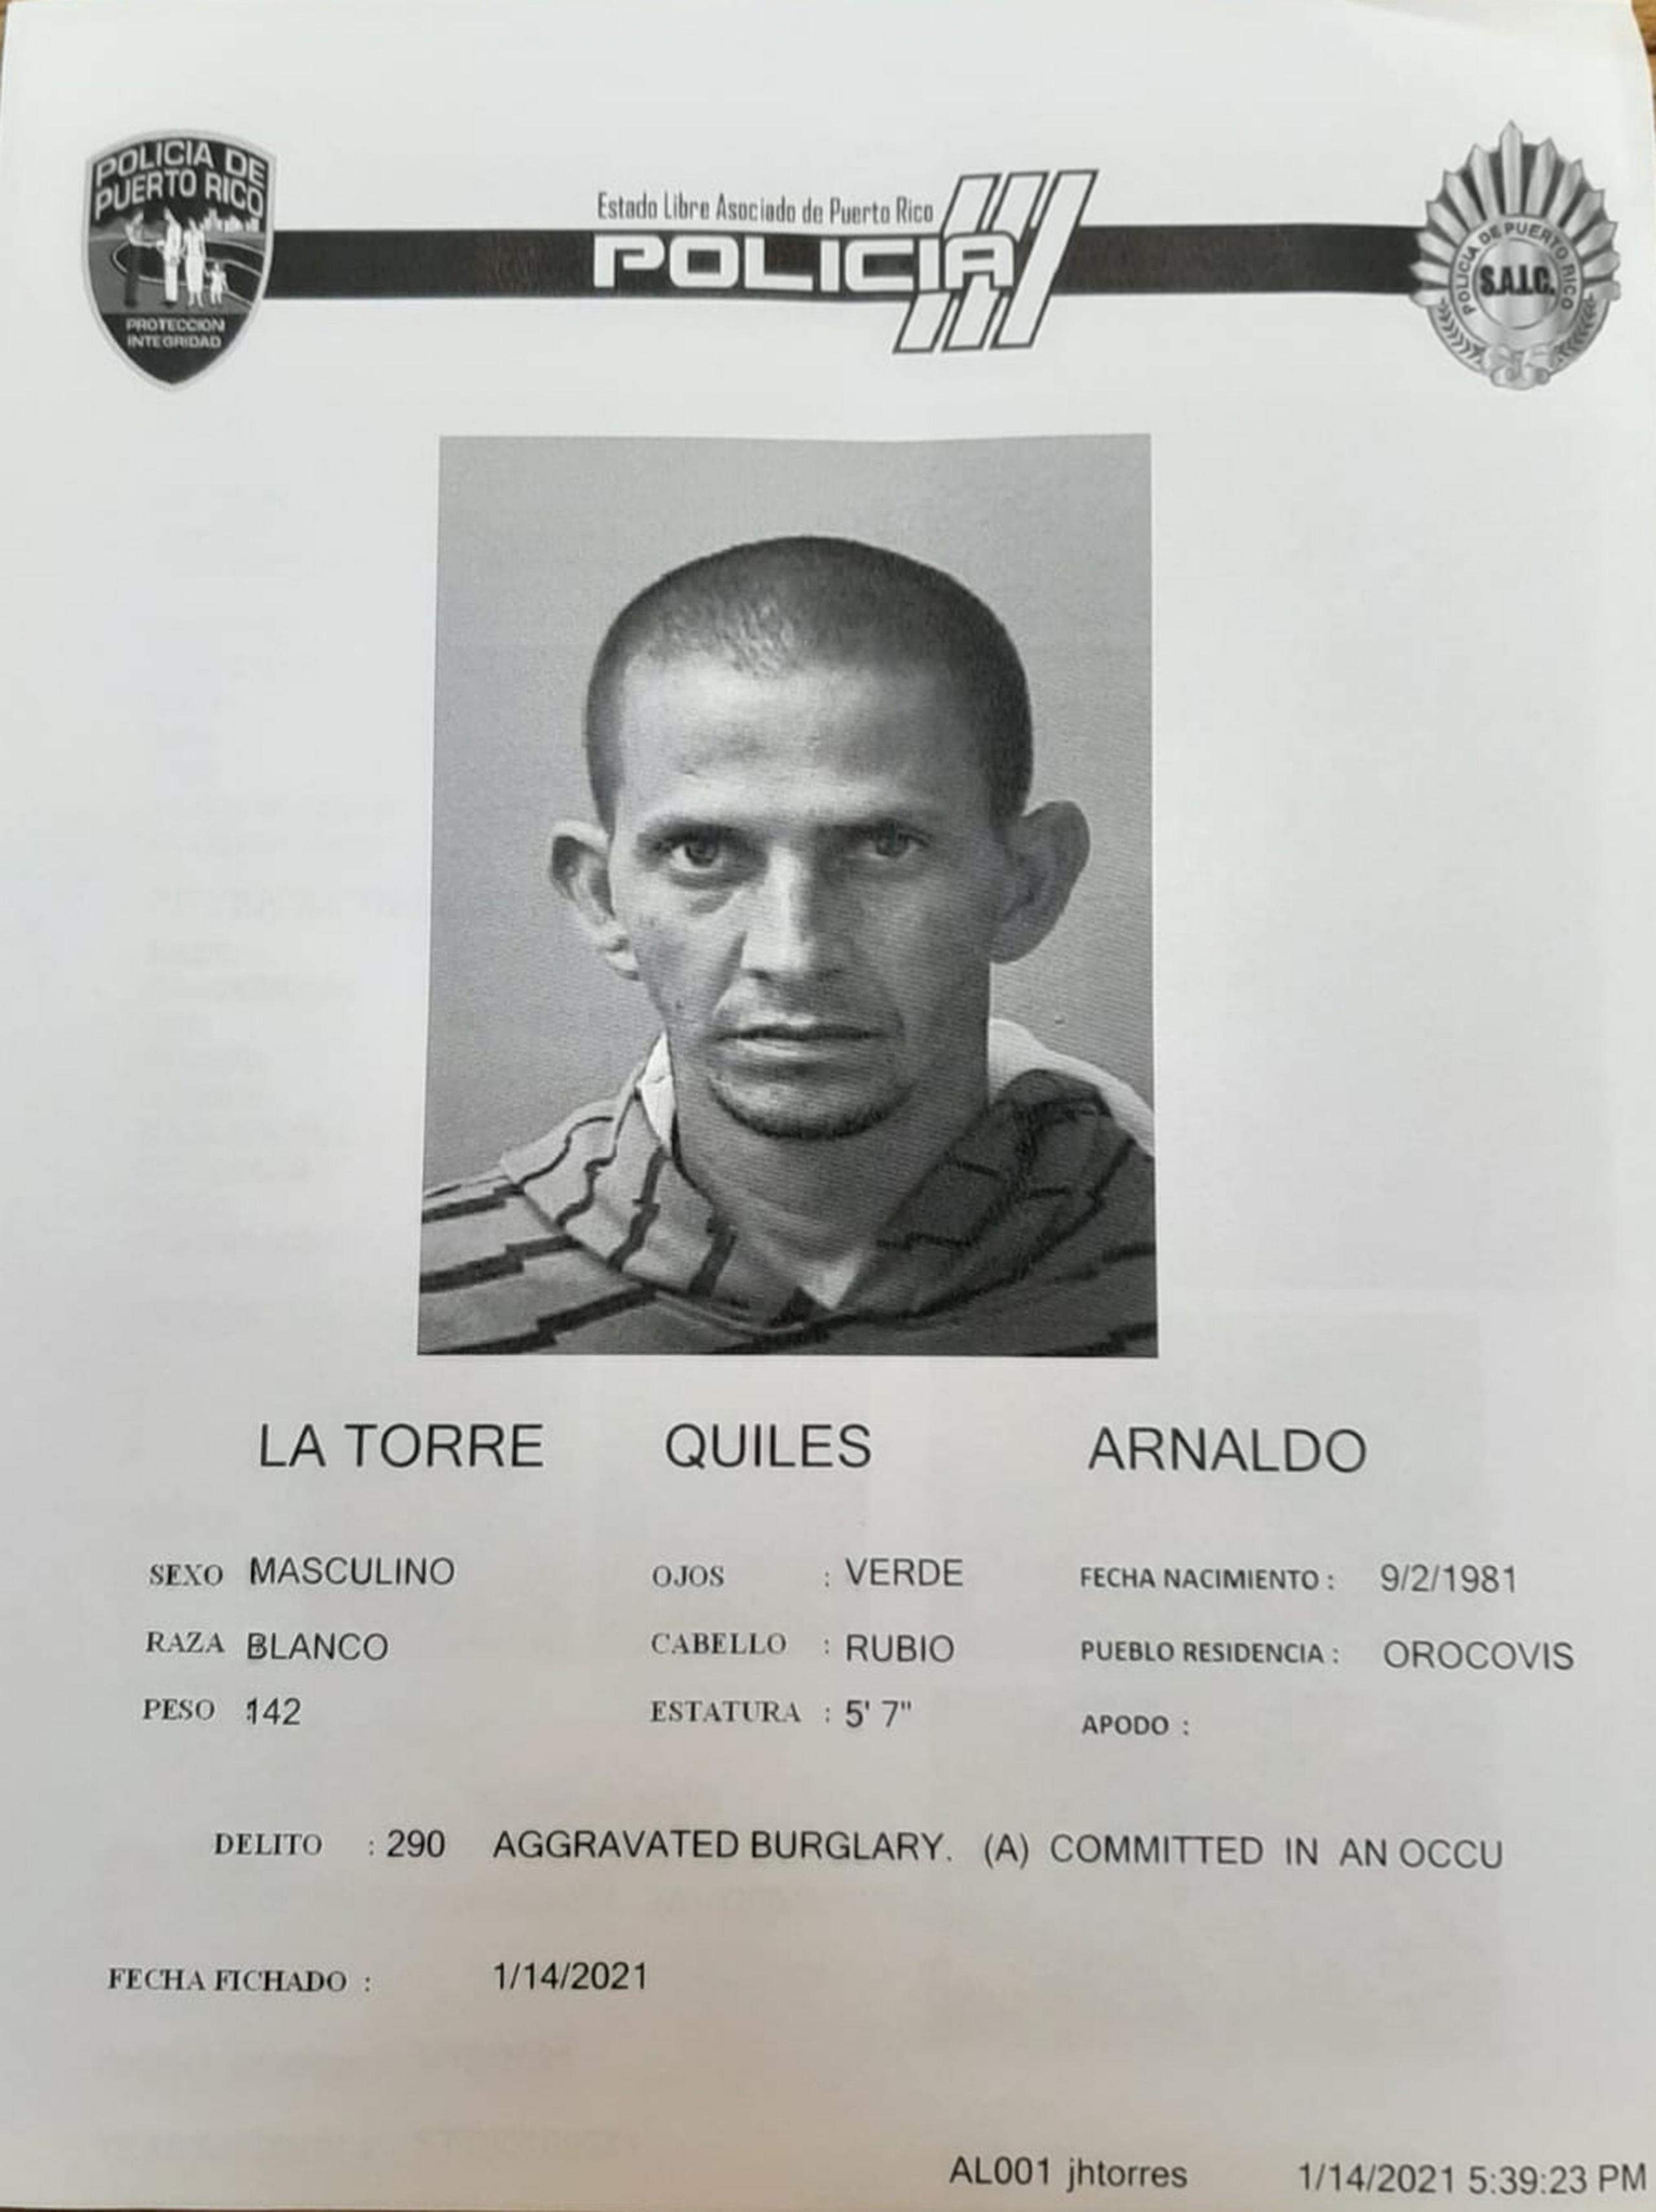 El juez Ángel Rivera Miranda, del Tribunal de Aibonito, determinó causa para arresto contra Arnaldo Latorre Quiles, de 39 años, por cargos de escalamiento, daños y apropiación ilegal en una parroquia.